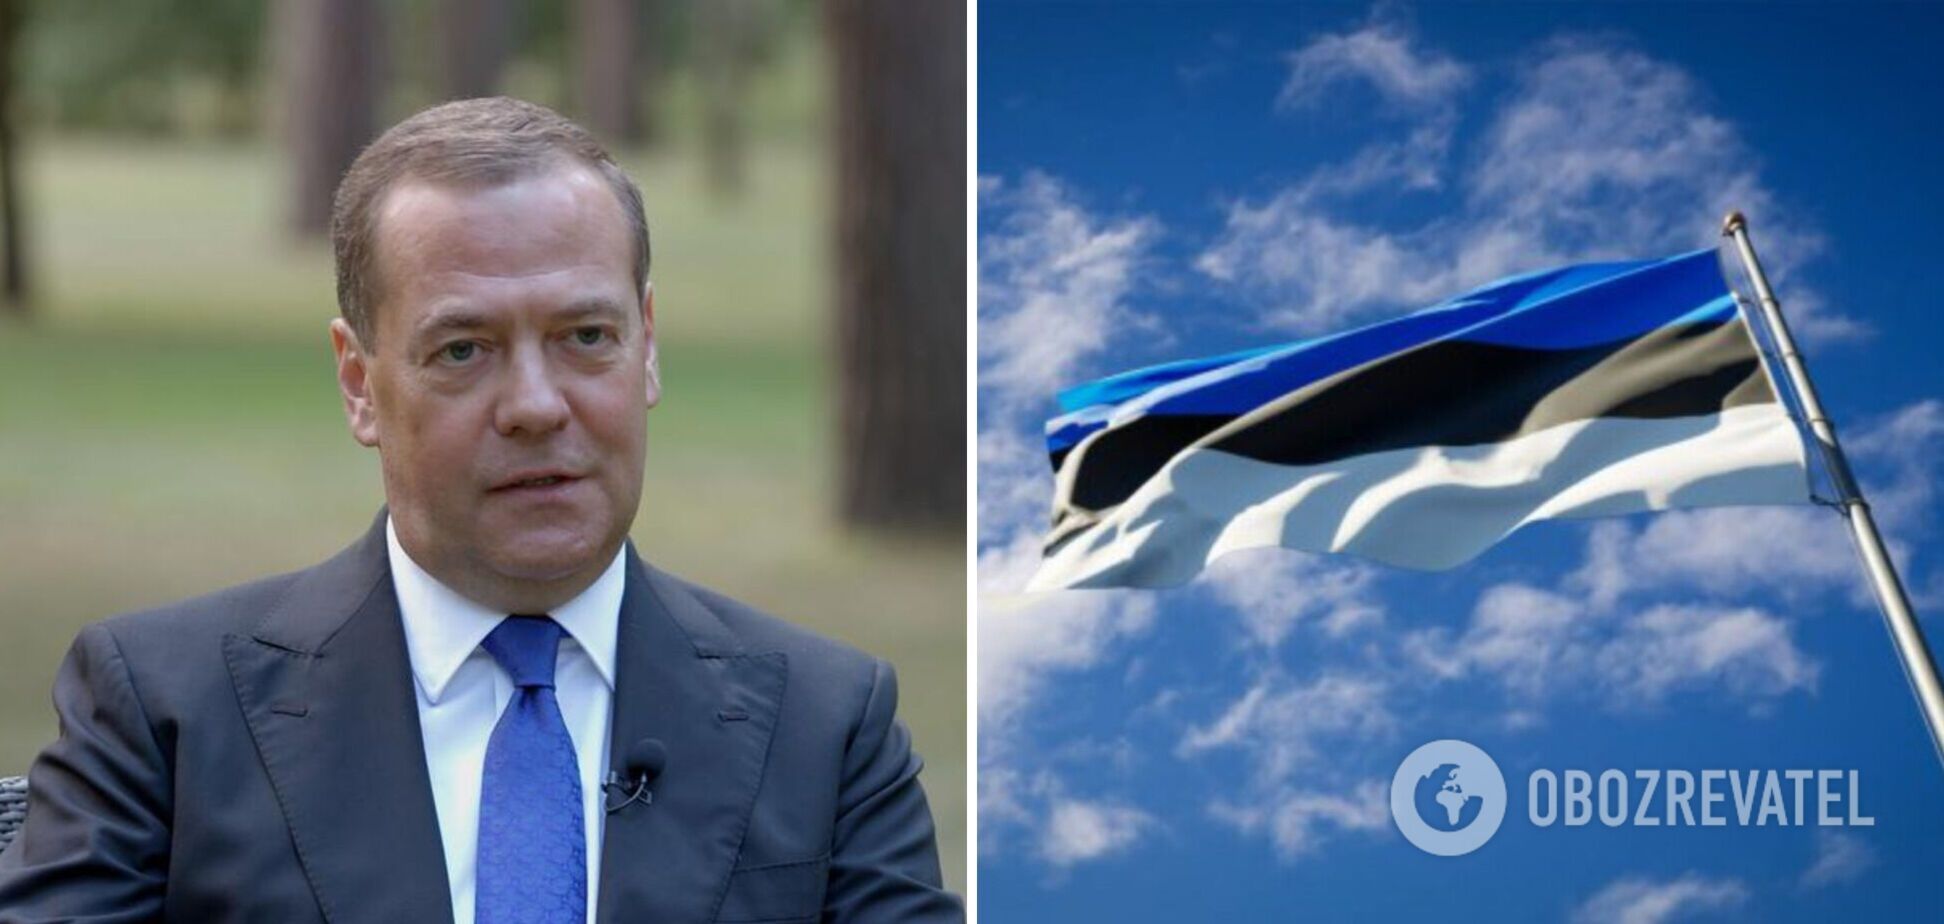 'Те, що ви на волі, – наше недопрацювання': Медведєв відзначився новим хамством на адресу Естонії